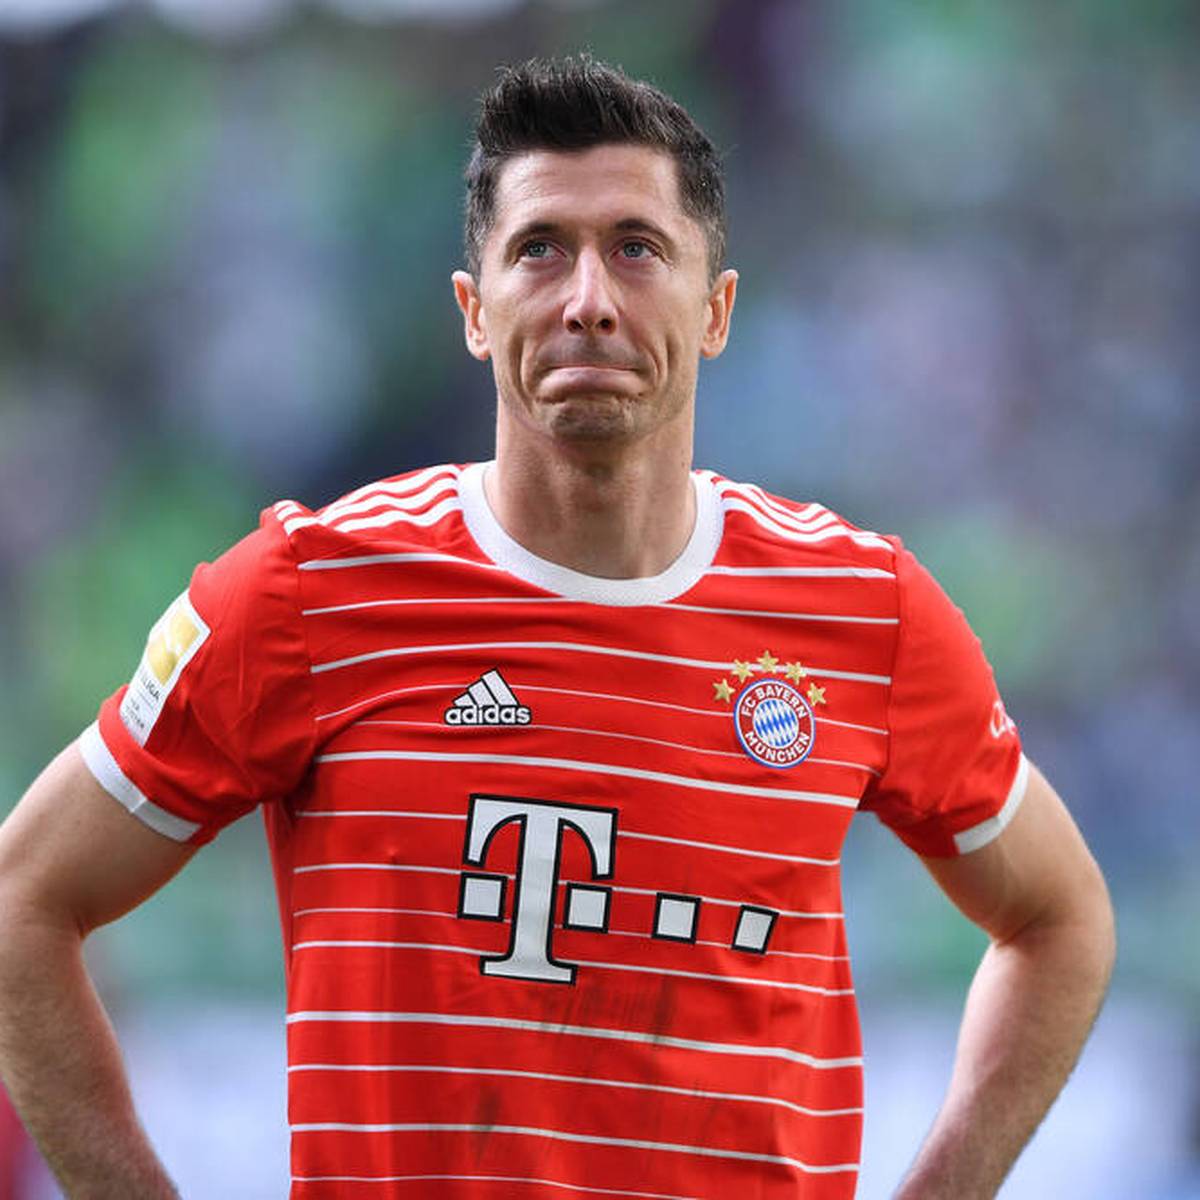 Robert Lewandowski hat sich beim FC Bayern mental offenbar bereits verabschiedet. Sein Wechselwunsch hat auch familiäre Gründe. Bleiben die Bosse hart?